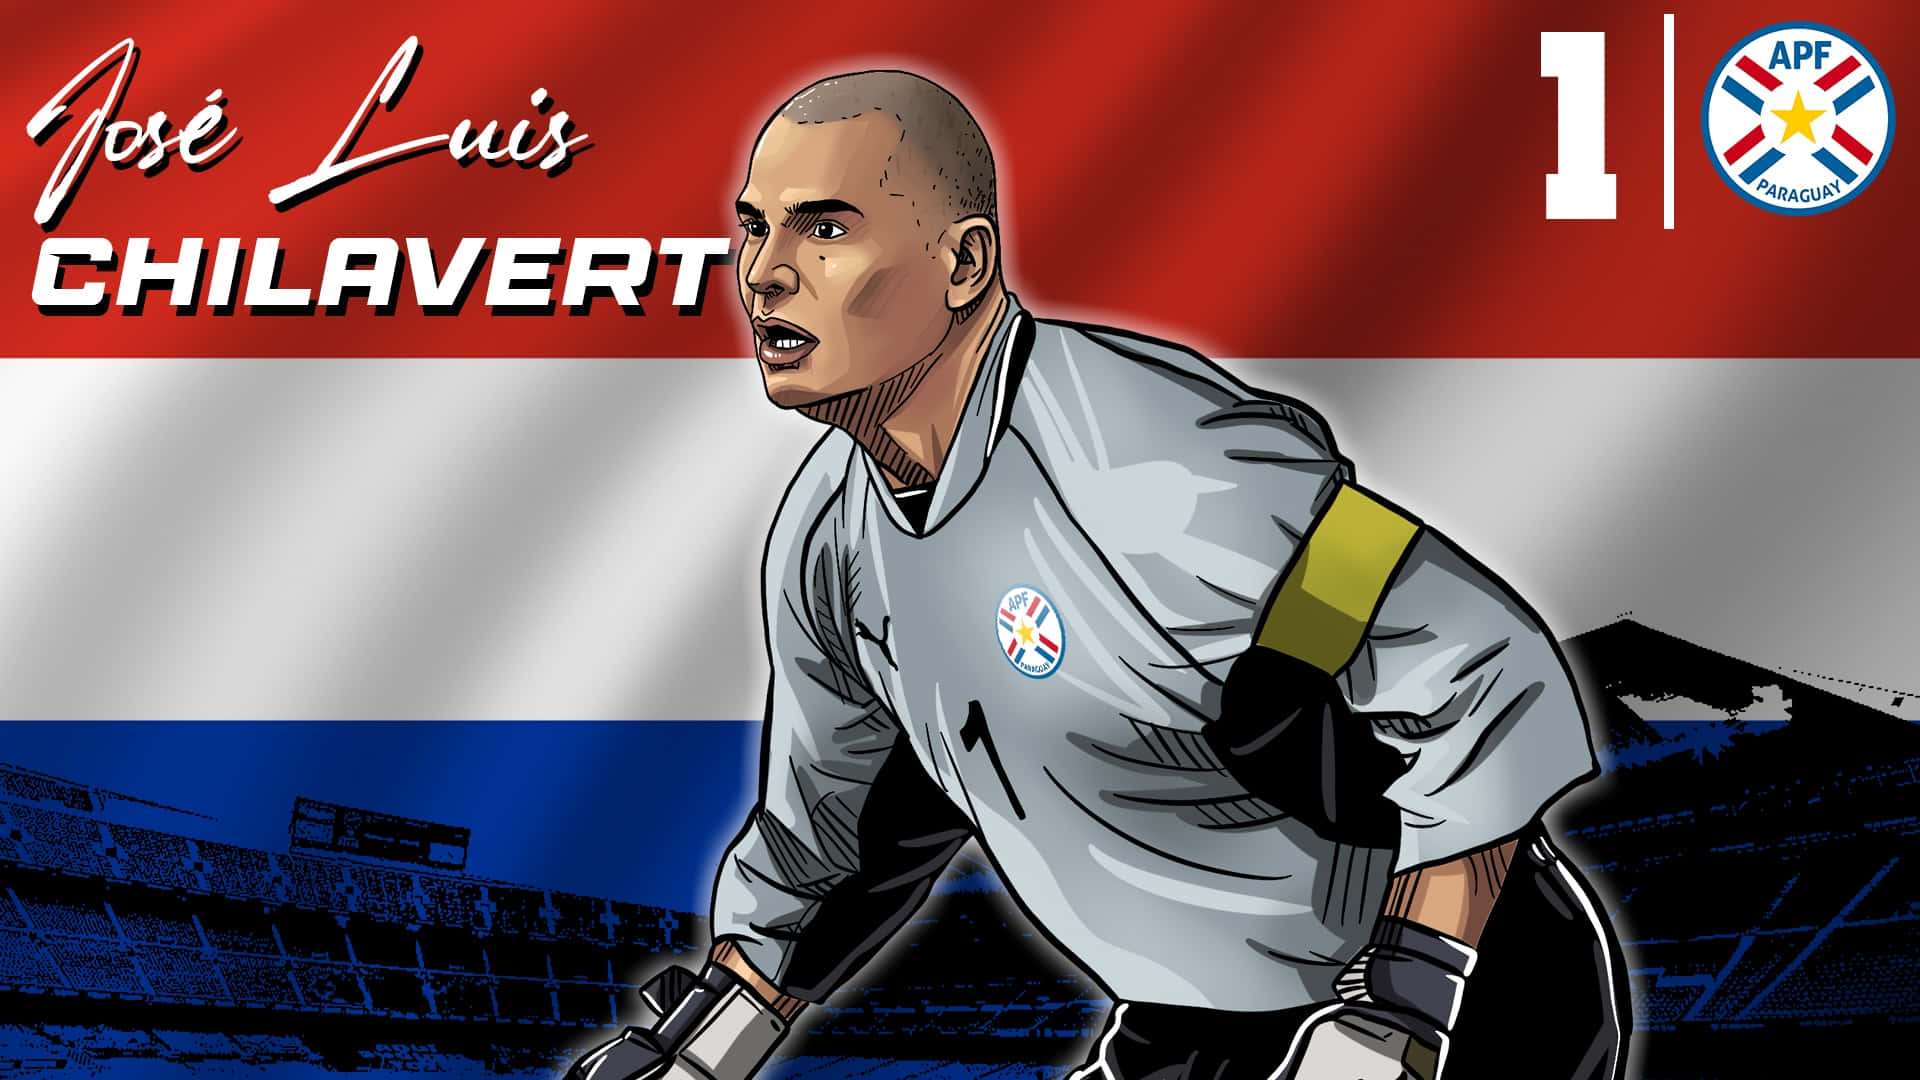 Paraguayanskfotbollsspelare Jose Luis Chilavert Digital Konst. Wallpaper